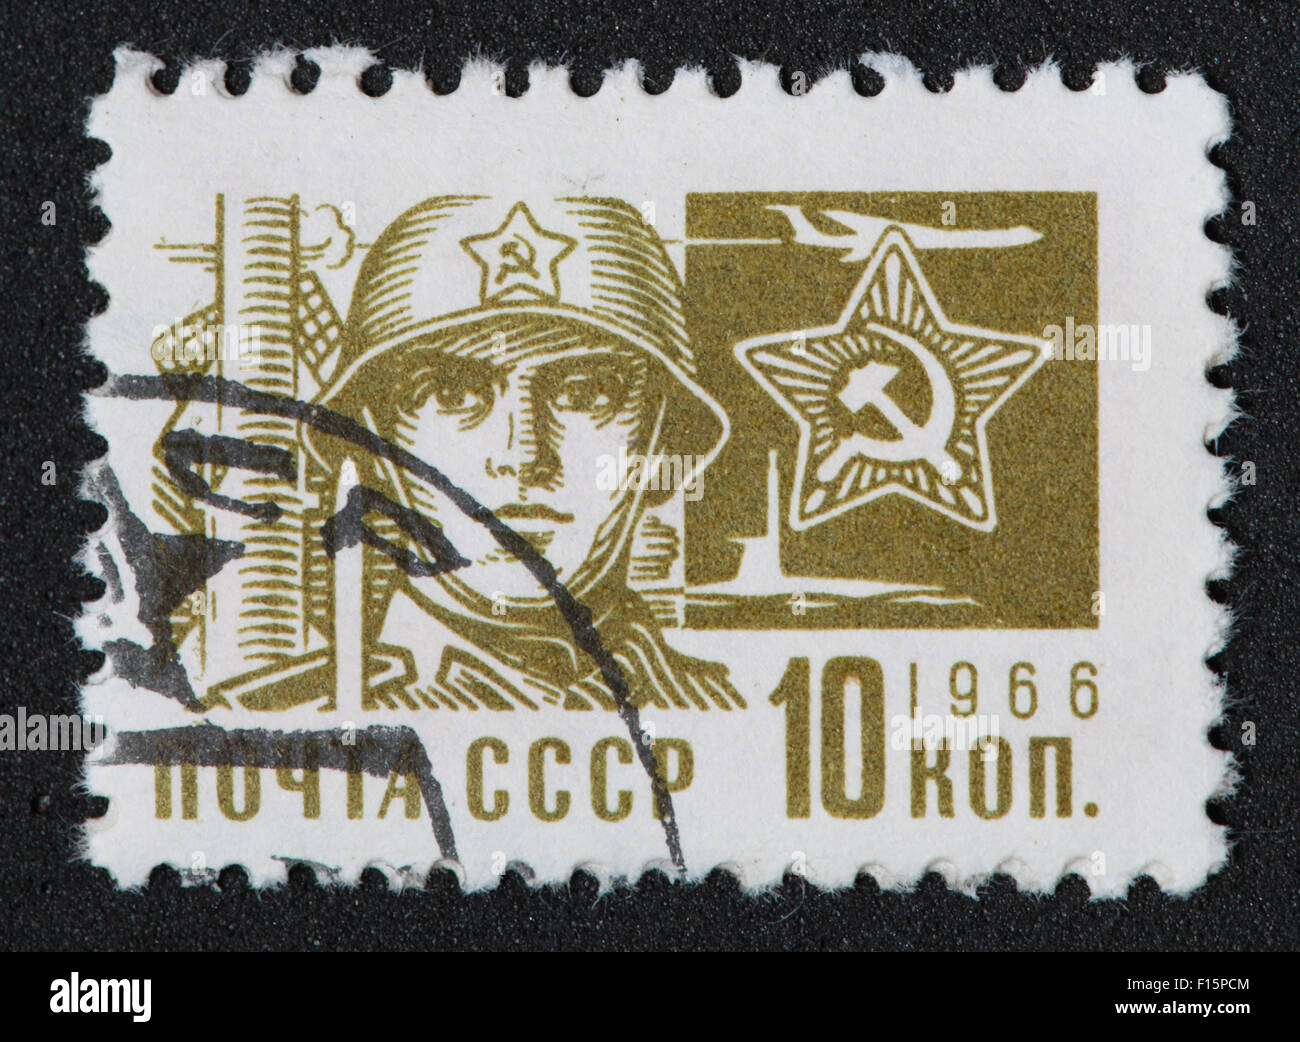 CCCP 10Kon 1966 armée soldat couleur couleur olive faucille marteau timbre soviétique de l'URSS Banque D'Images